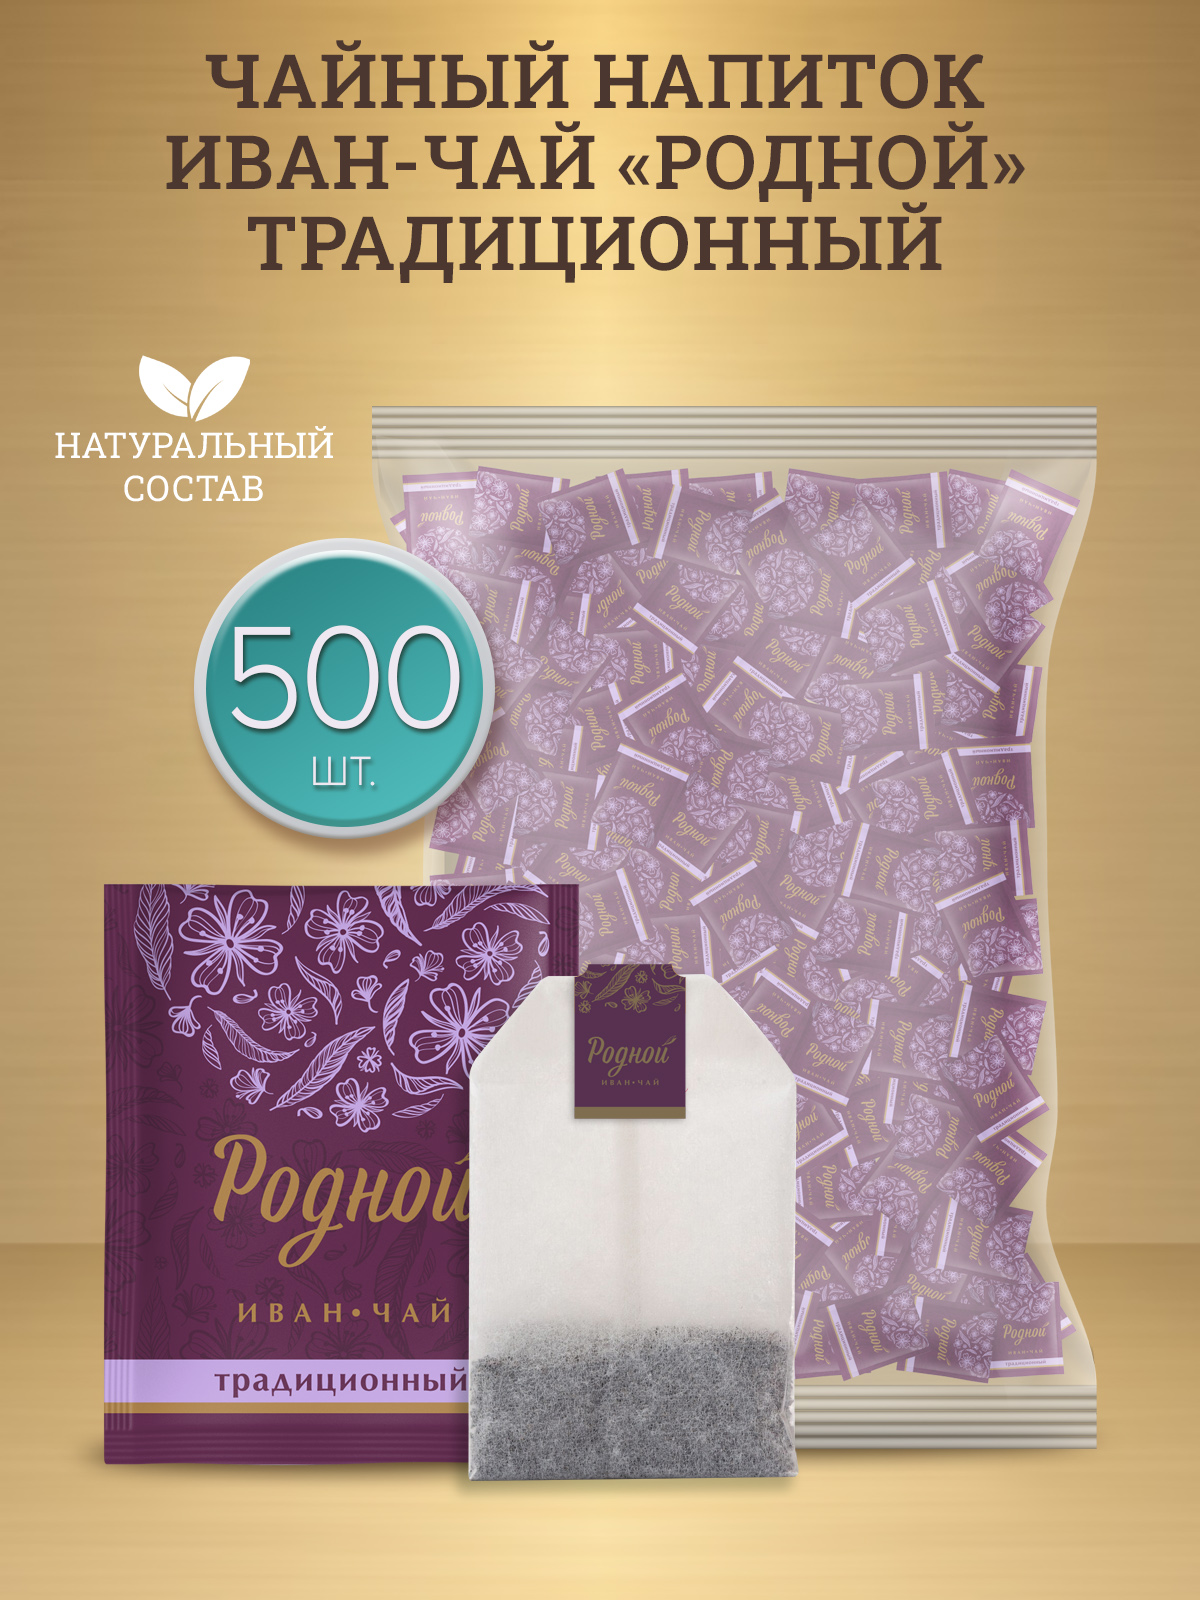 Чай Родной ферментированный Иван-чай Традиционный, 500 шт х 2 г